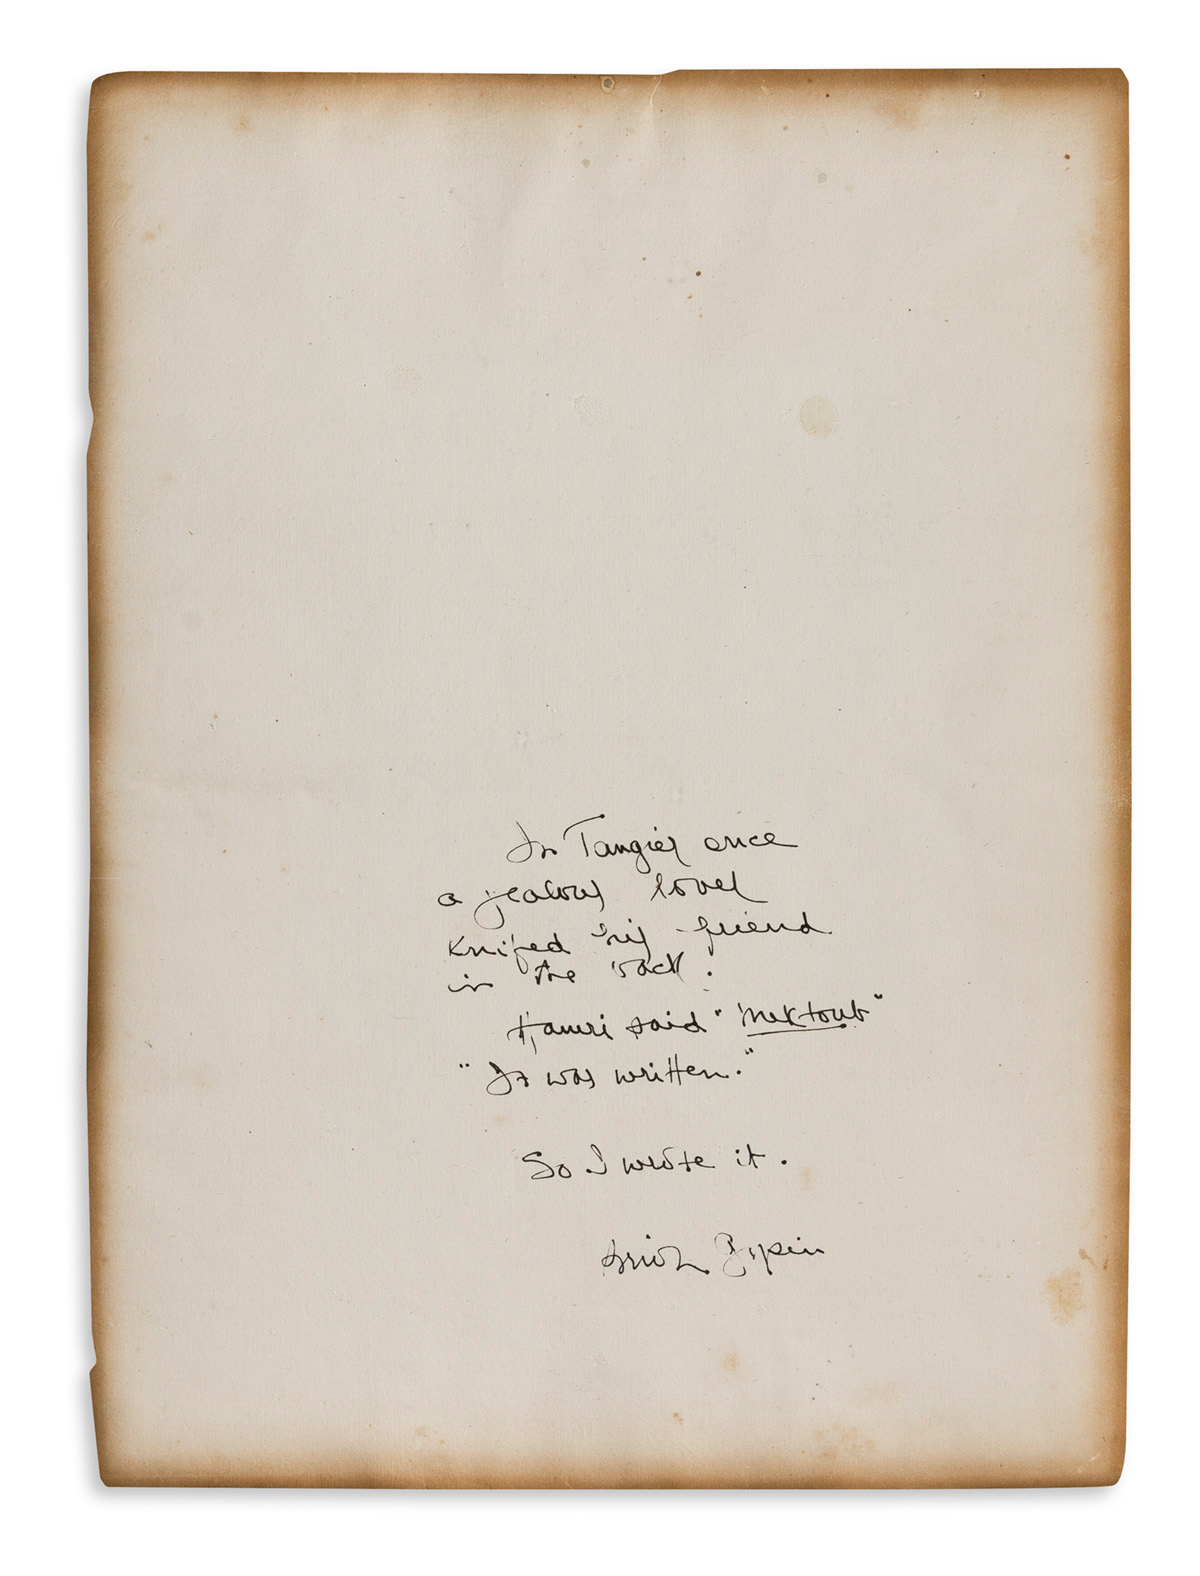 BRION GYSIN (1916-1986) Autograph Manuscript Signed,